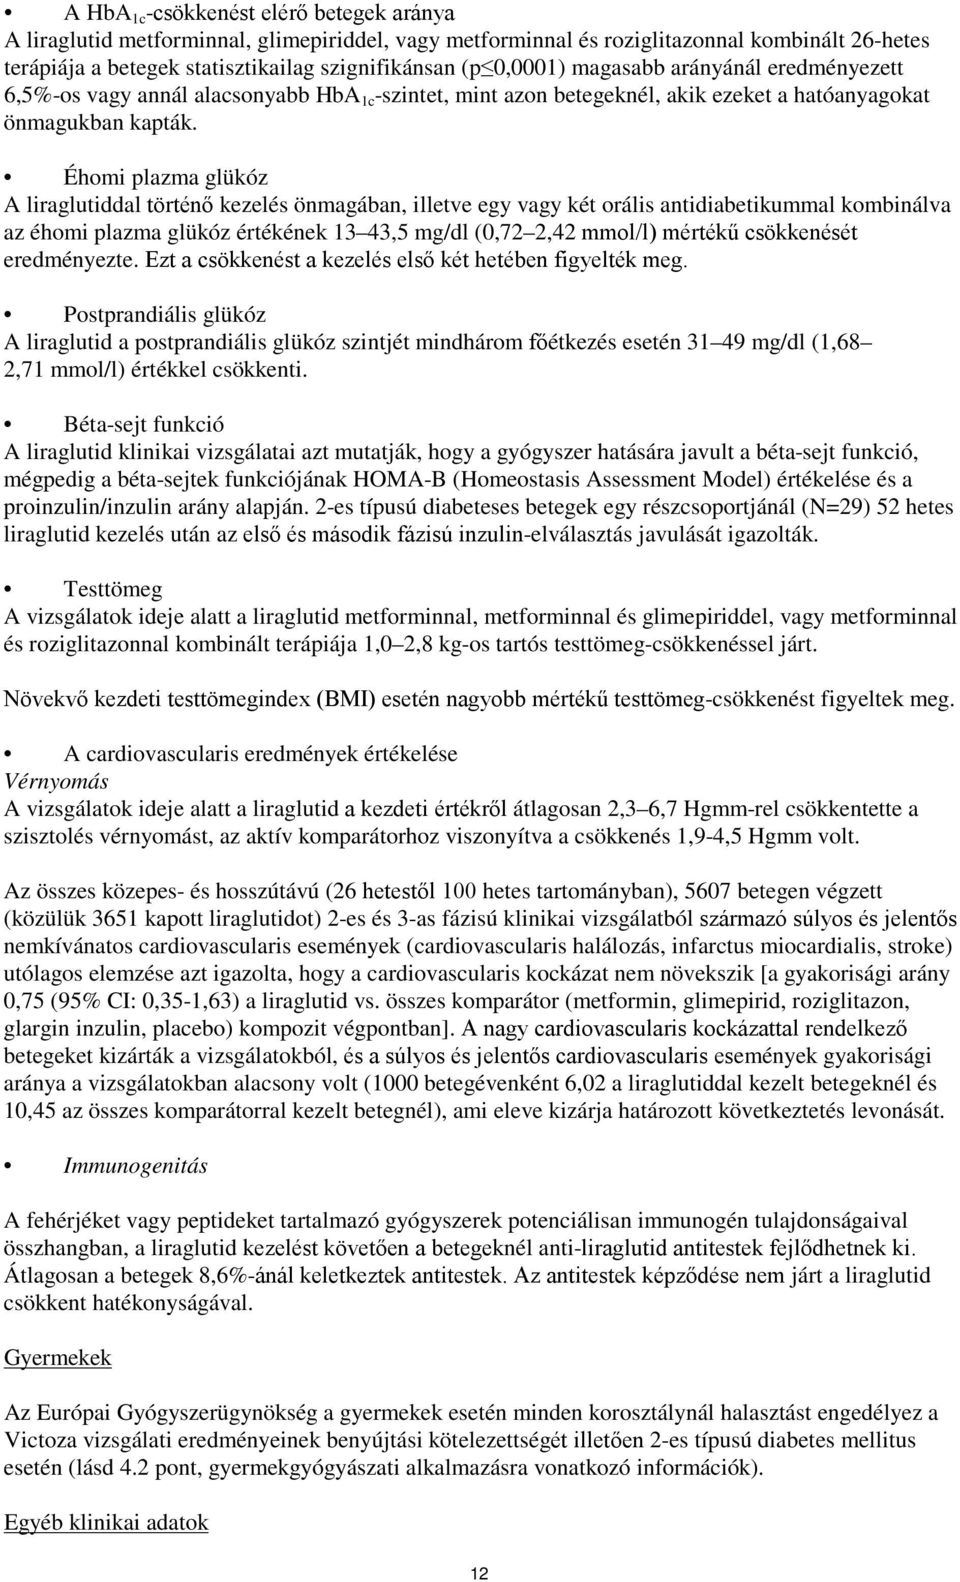 Éhomi plazma glükóz A liraglutiddal történő kezelés önmagában, illetve egy vagy két orális antidiabetikummal kombinálva az éhomi plazma glükóz értékének 13 43,5 mg/dl (0,72 2,42 mmol/l) mértékű